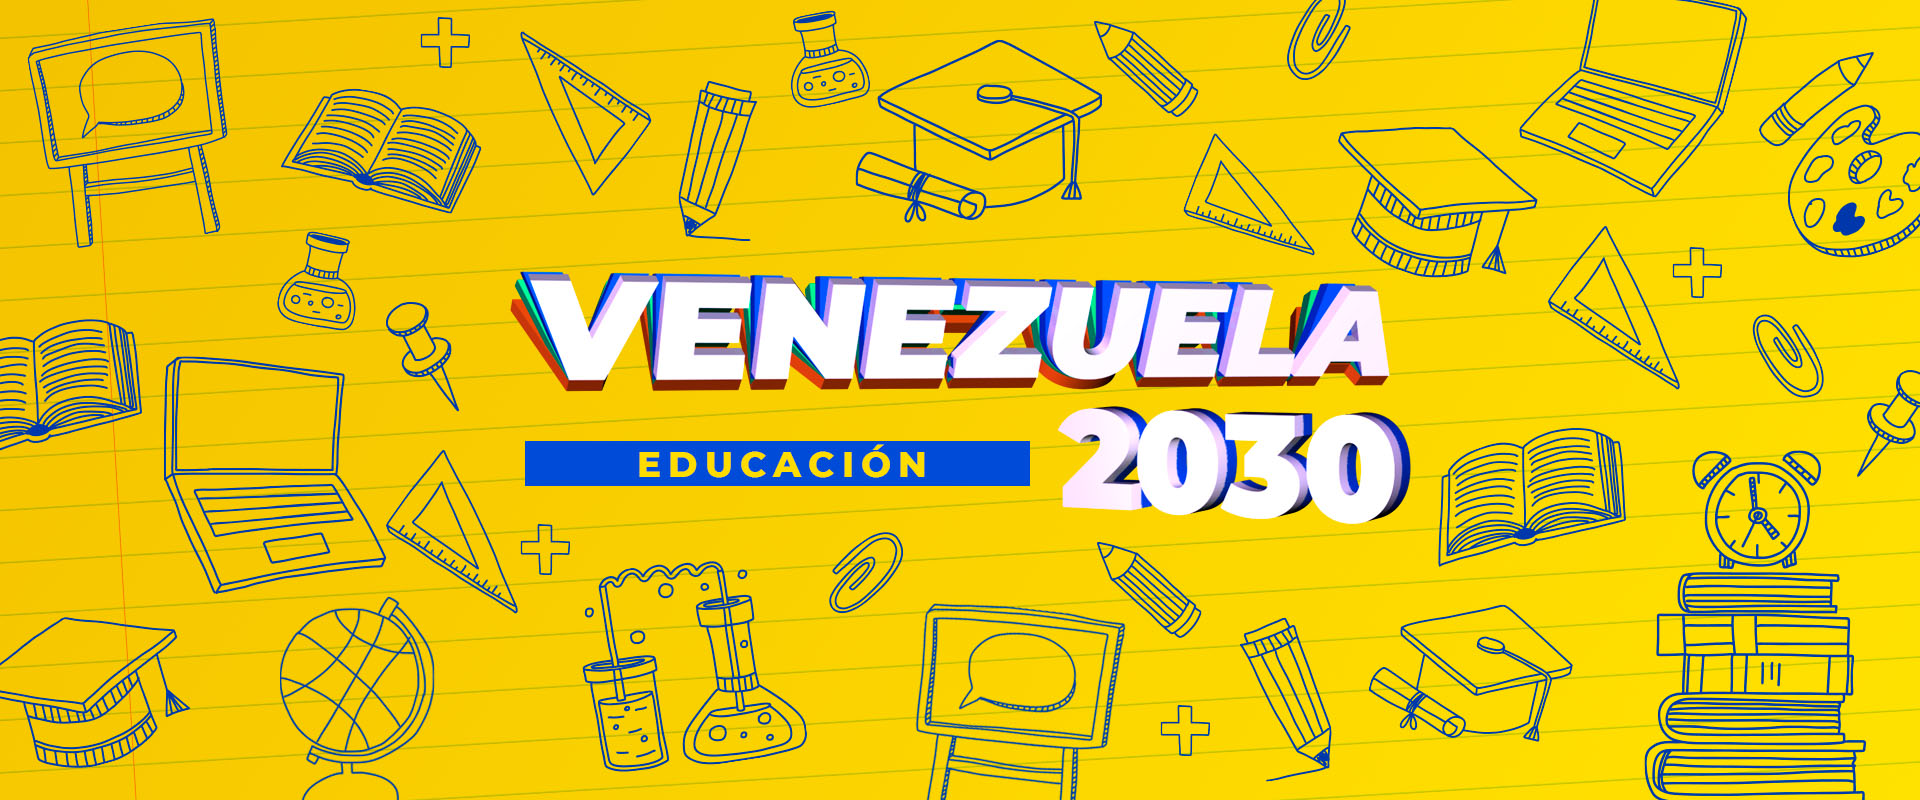 VZLA2030-Educacion